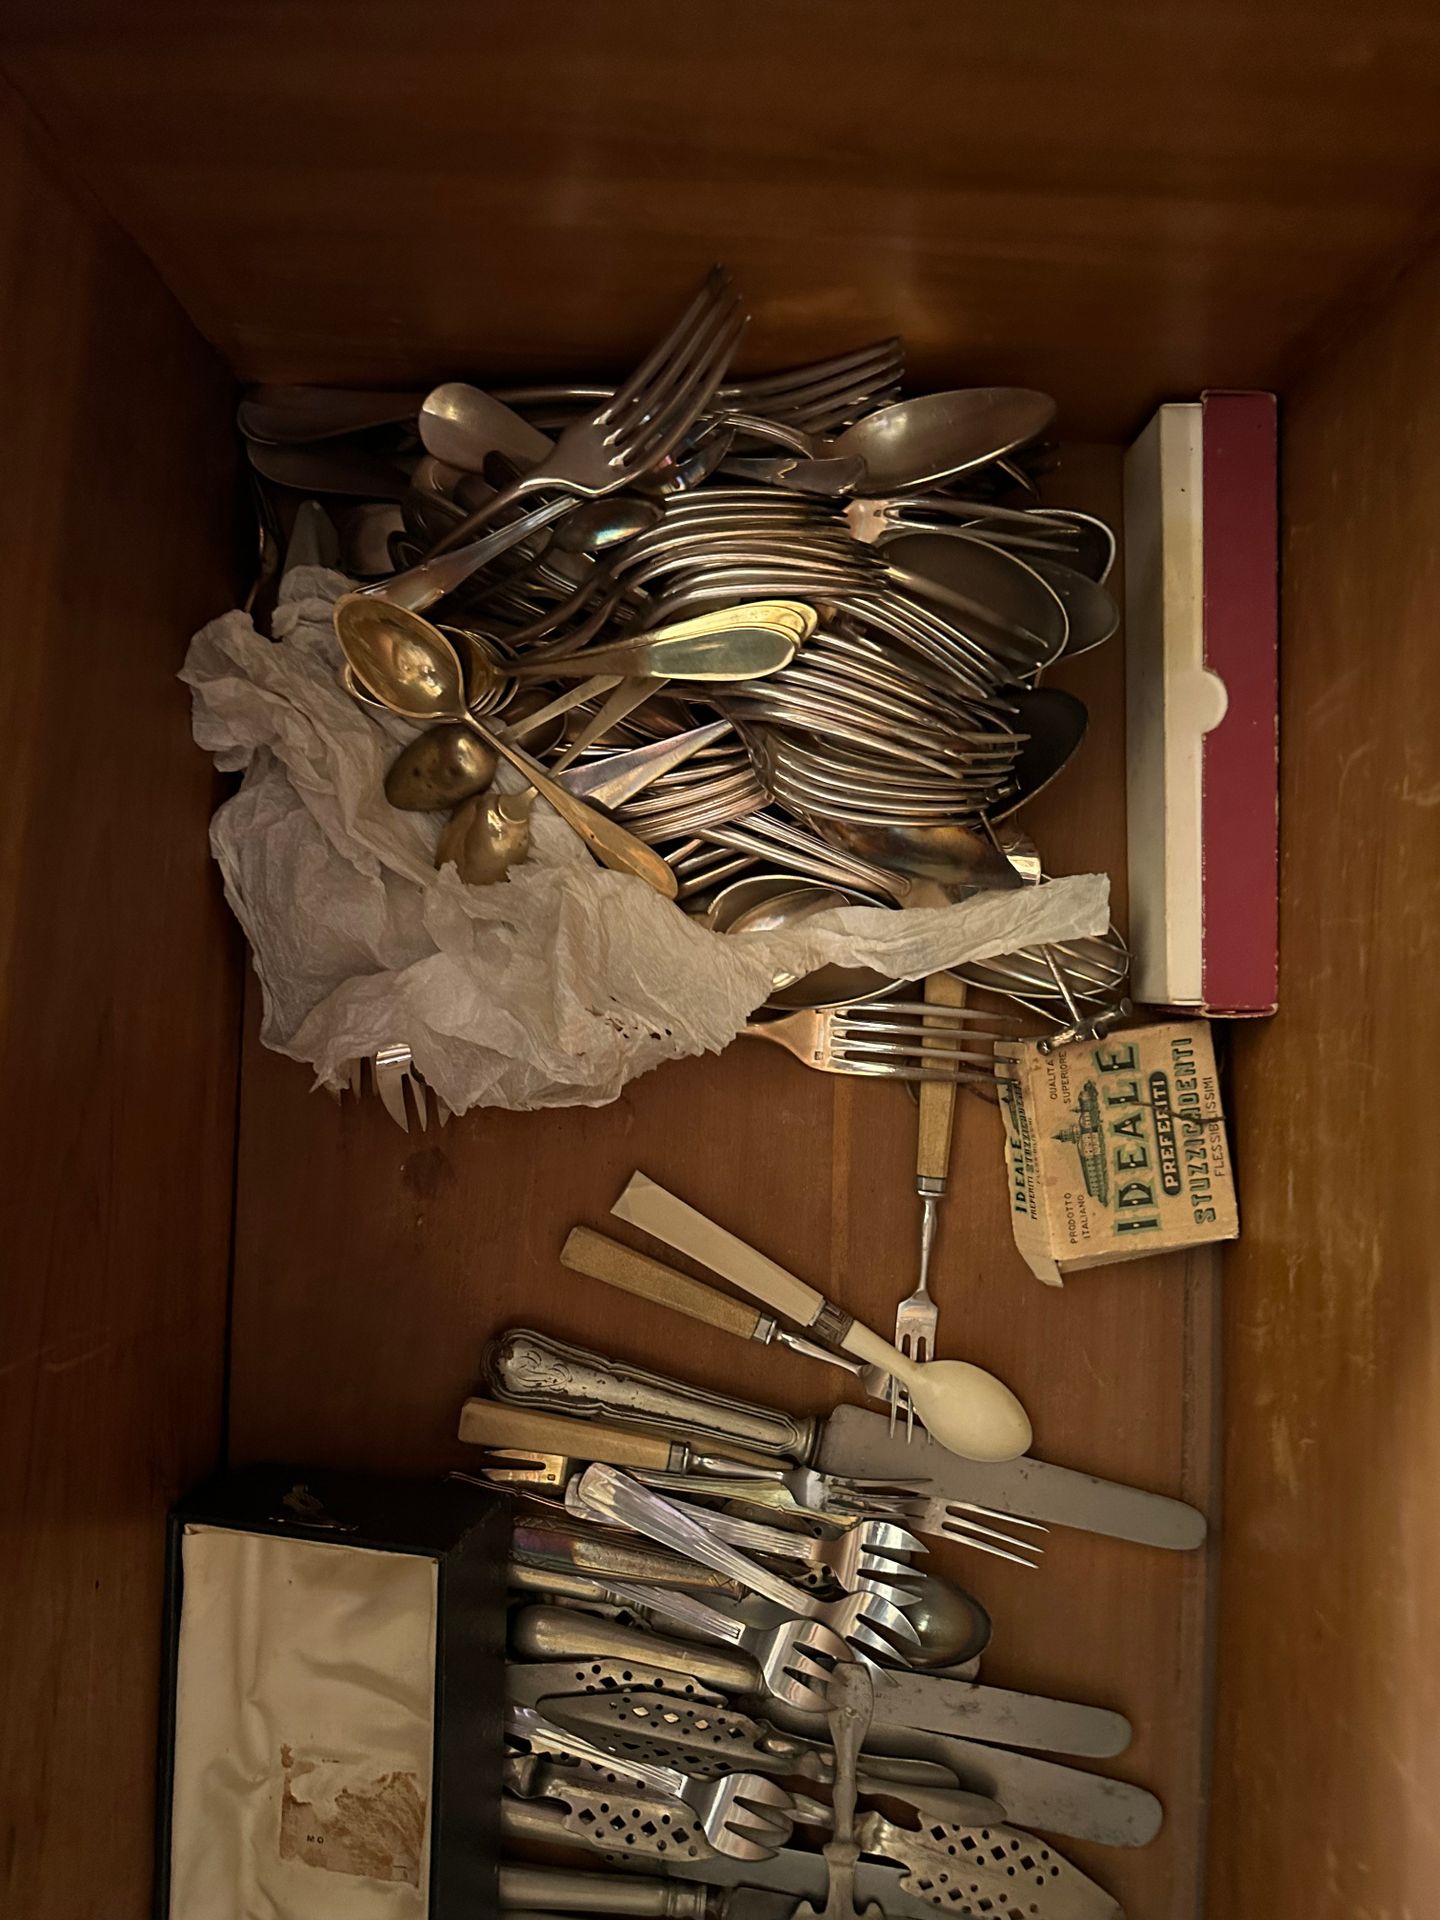 Fort lot de métal argenté Comprese forchette, cucchiai, stoviglie